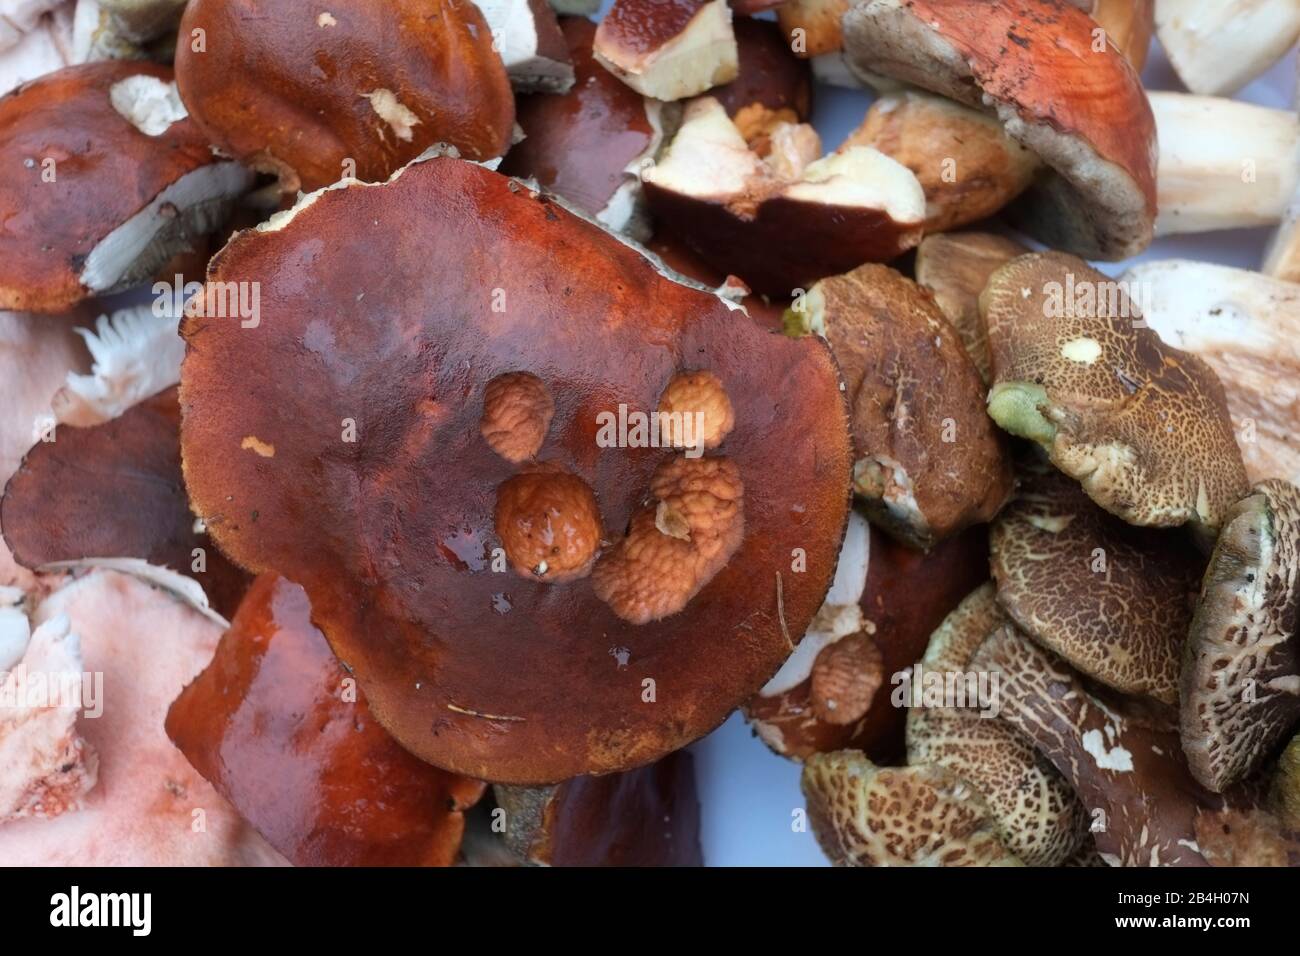 Freshly picked mushrooms - Boletus edulis Stock Photo